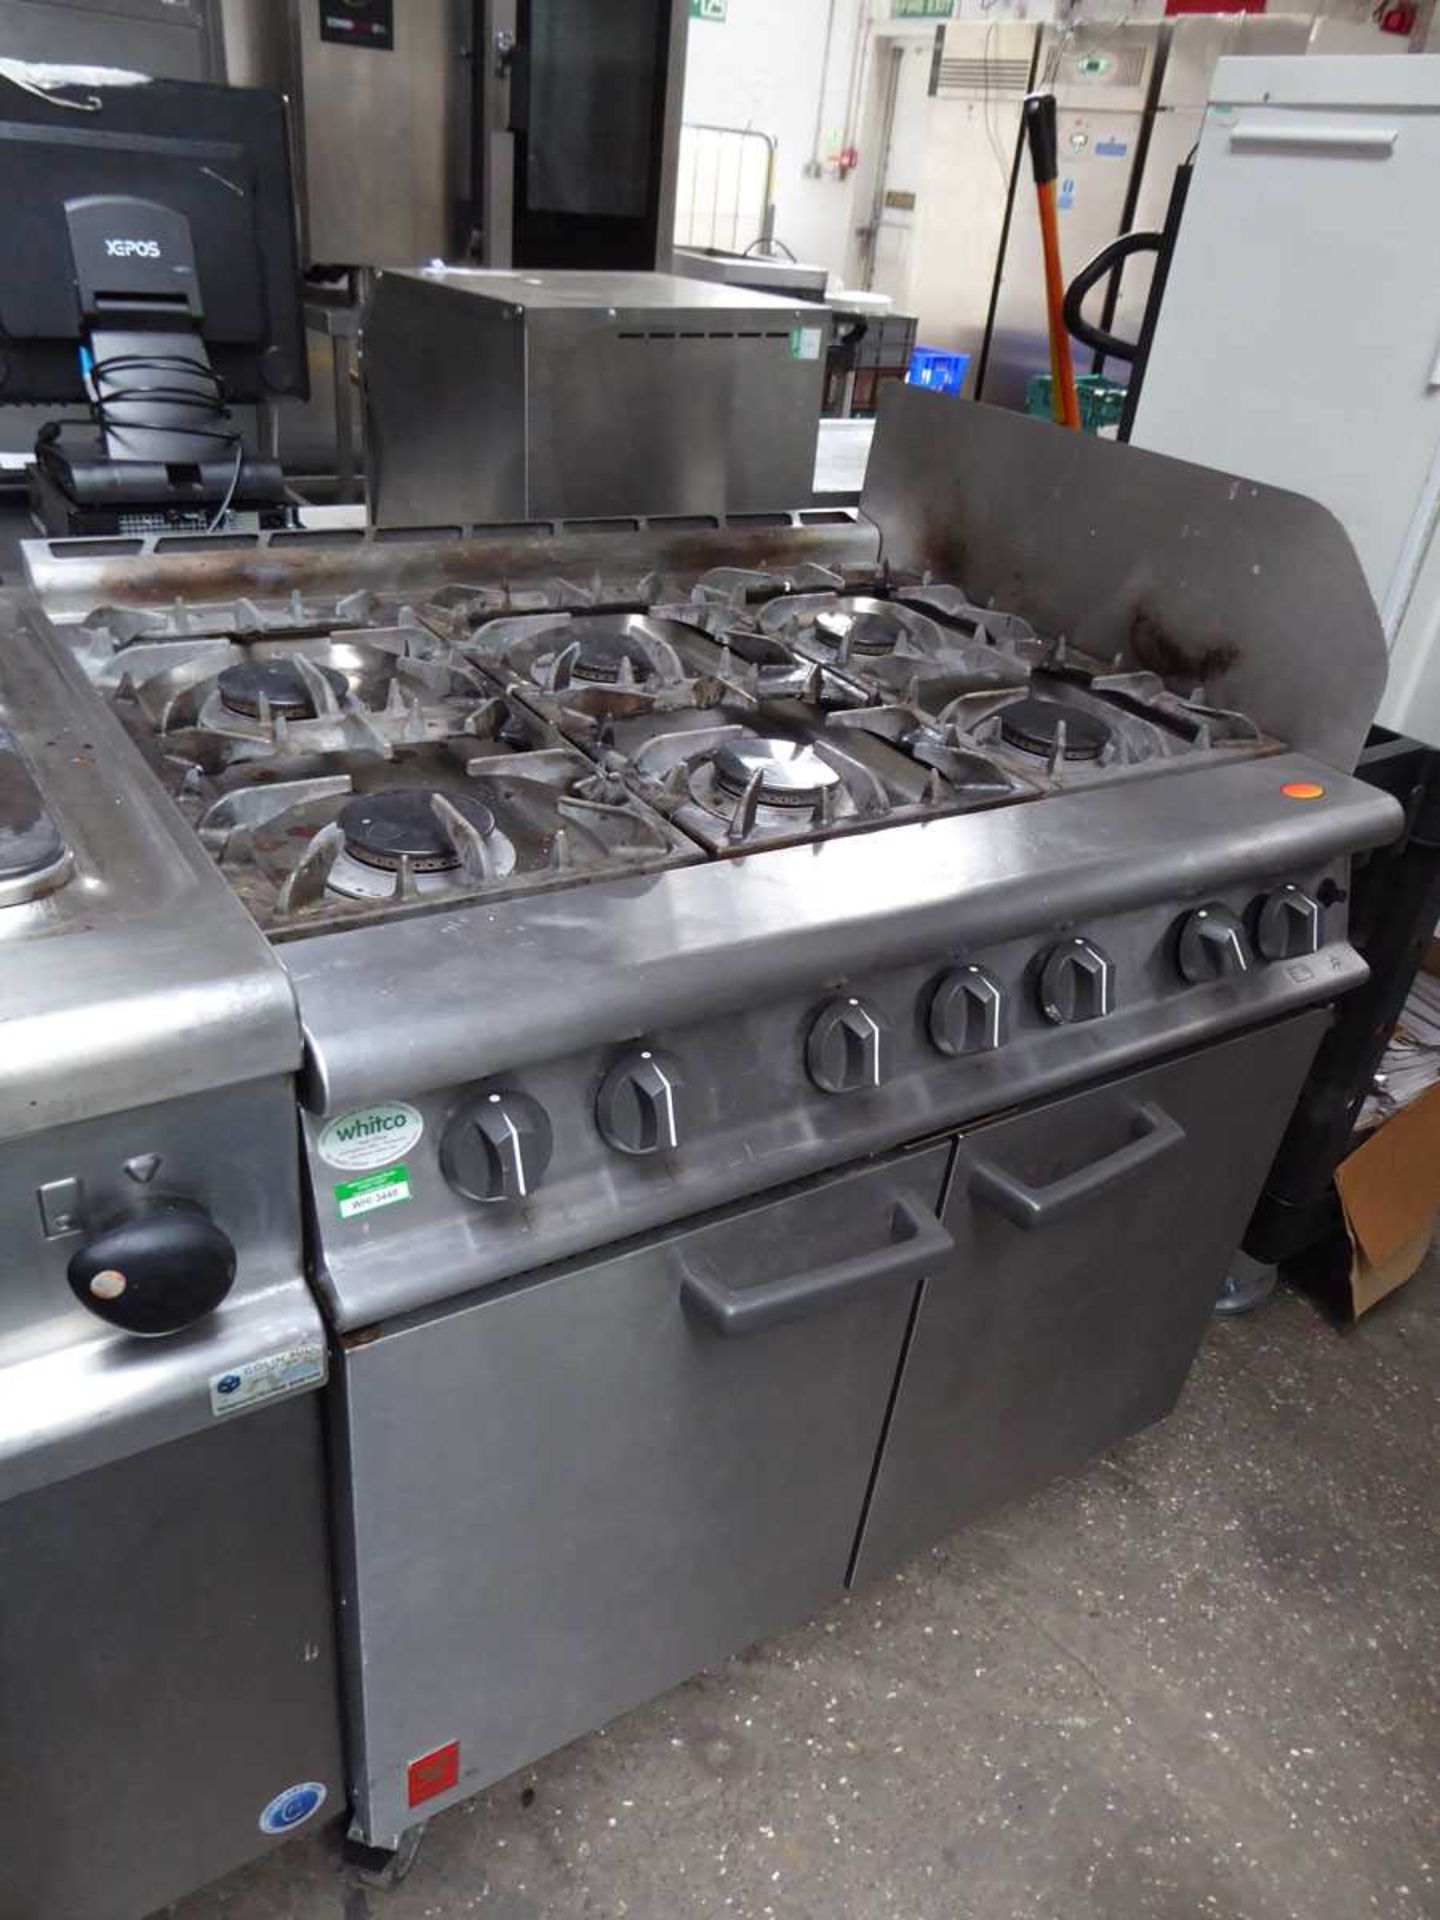 90cm gas Falcon 6 burner cooker with 2 door oven under